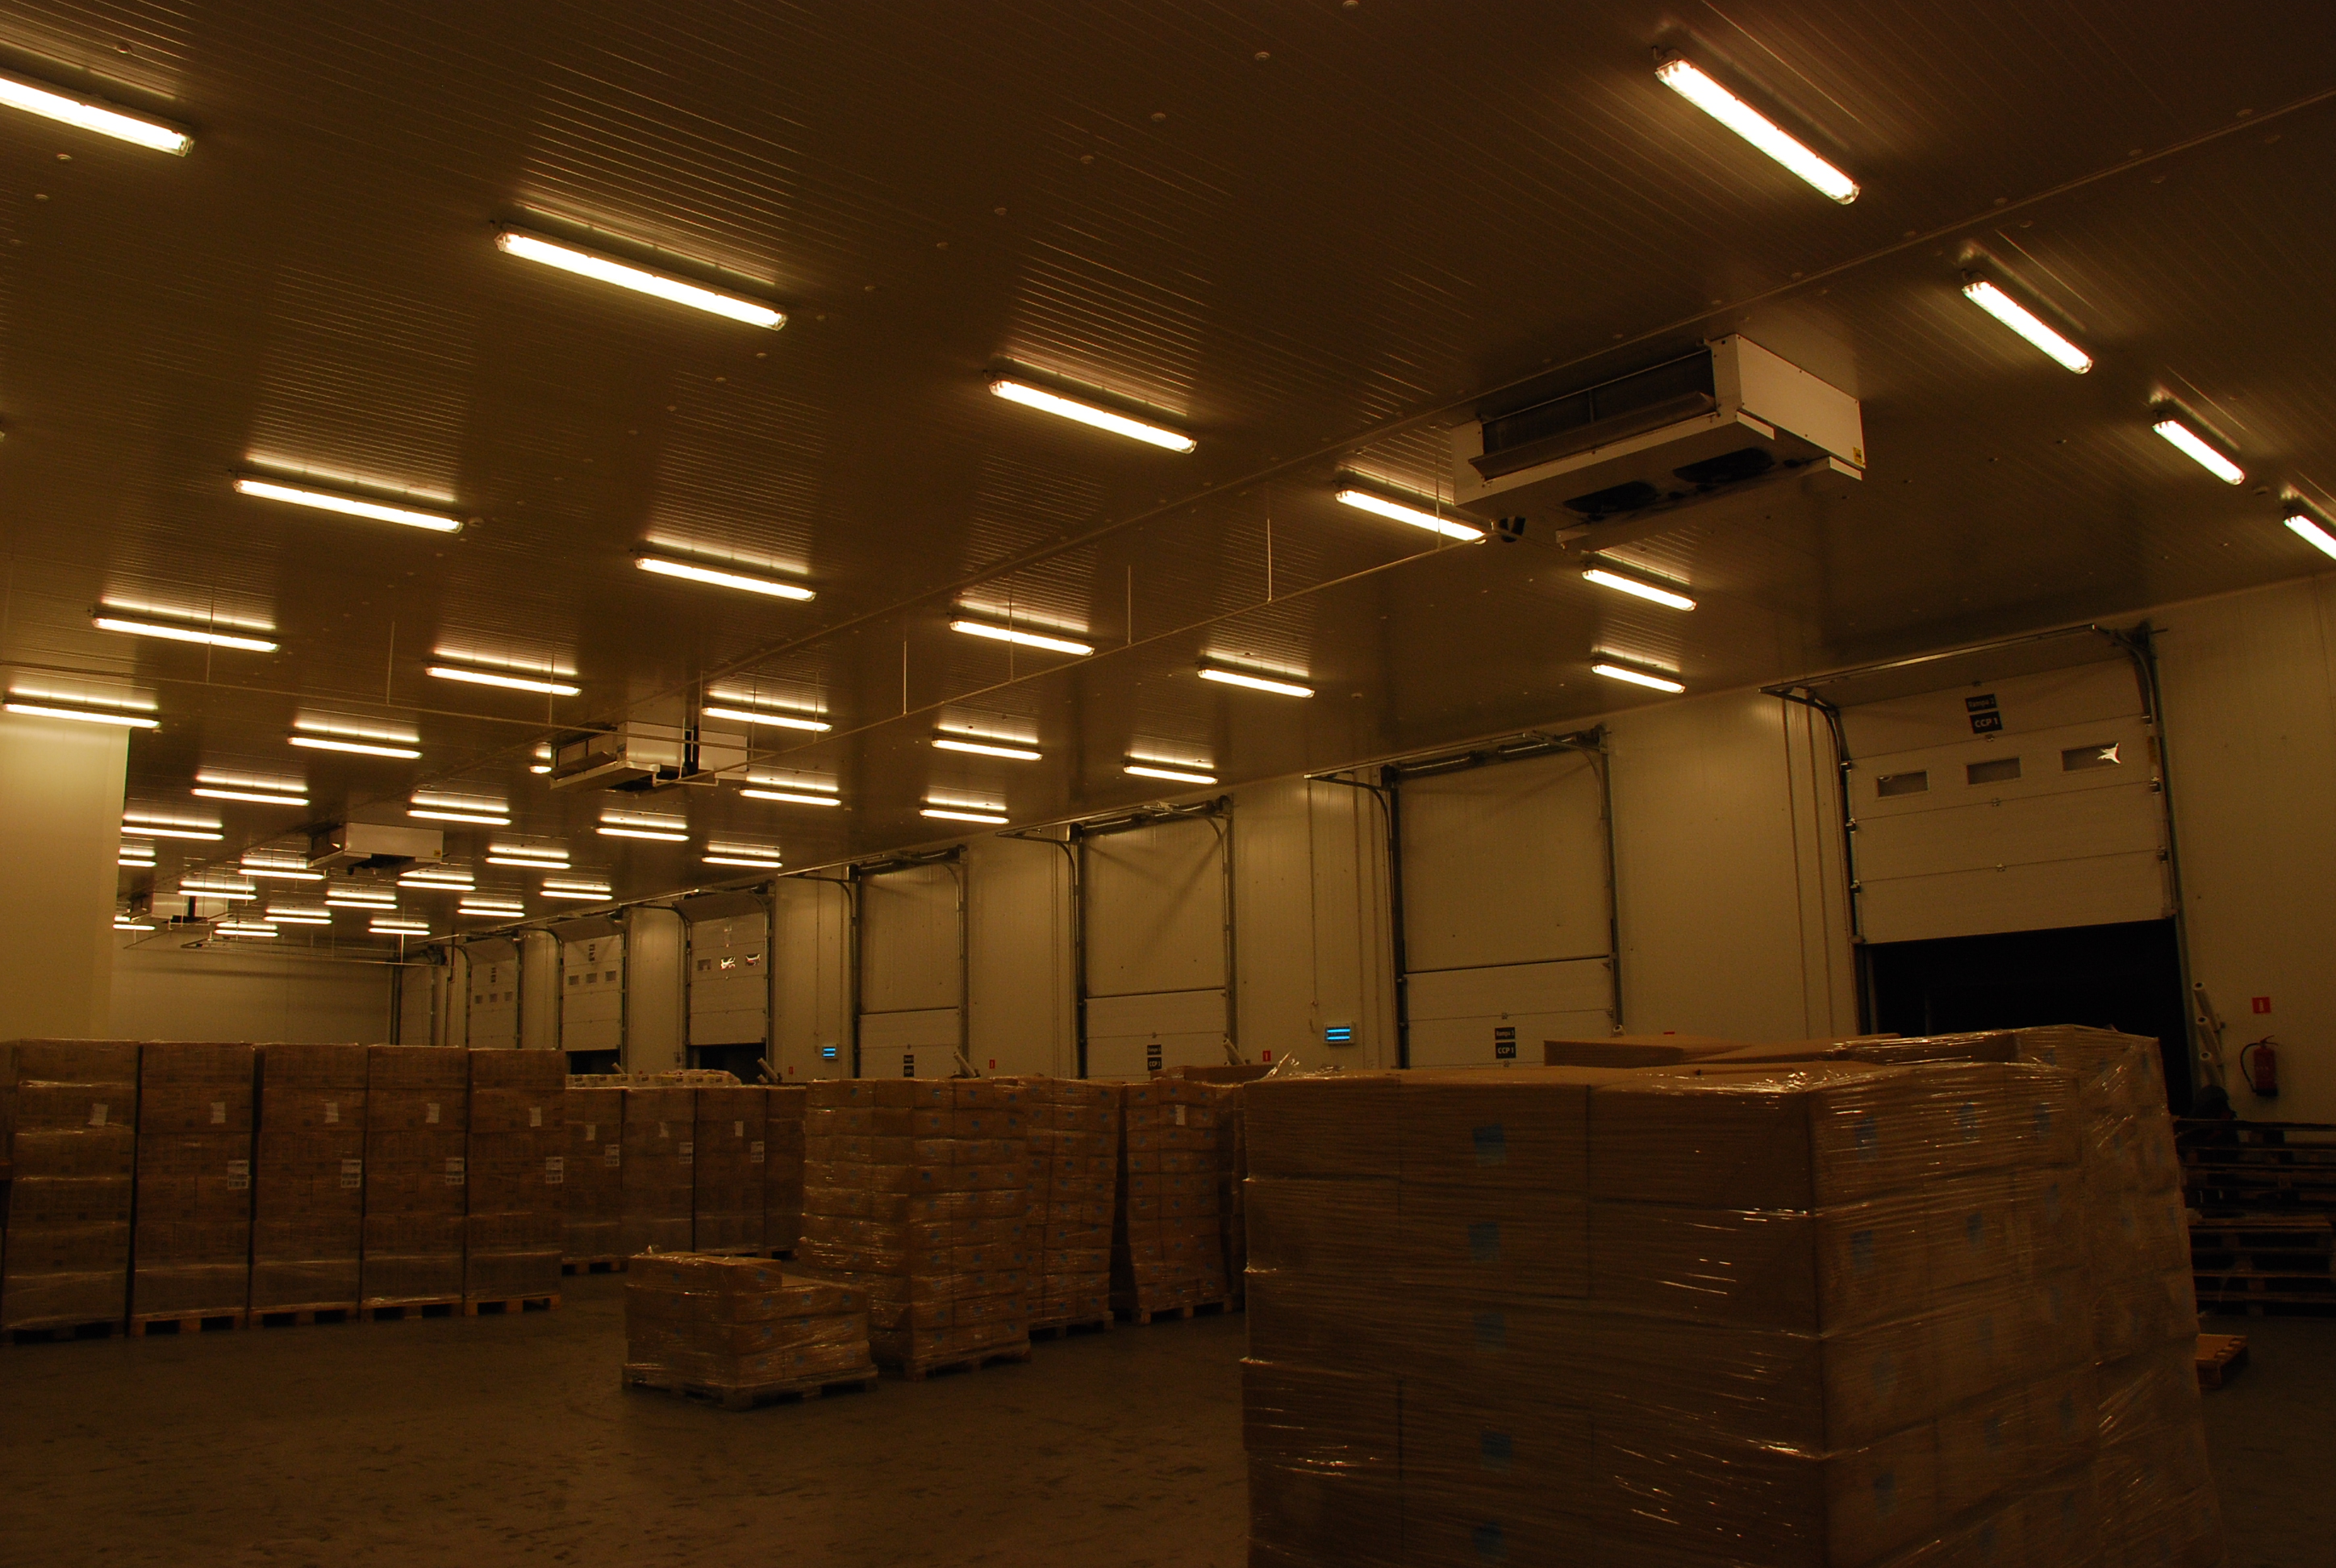 Pago sorting room - Katowice - 4 HDI dual discharge evaporators
PAGO to specjalista w dziedzinie kompleksowej obsługi logistycznej produktów mrożonych. Firma powstała w 2007 roku.